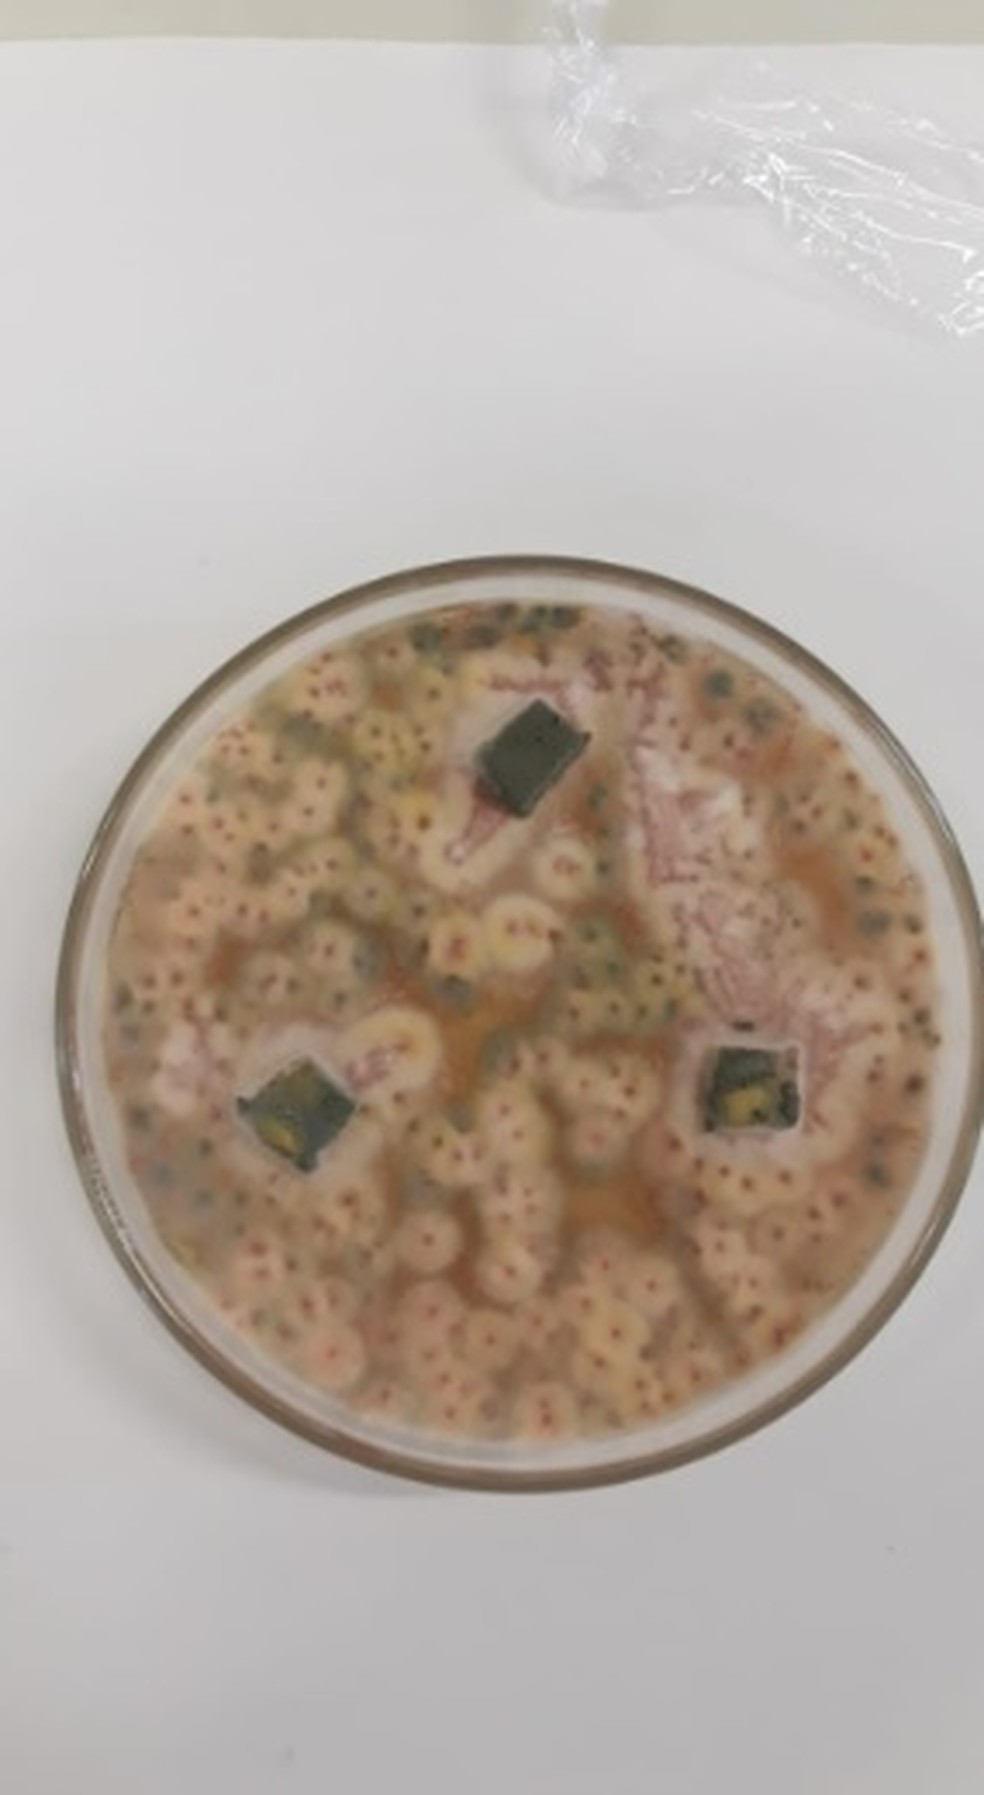 Fungo endofitico do grão da soja da espécie Talaromyces amestolkie  crescendo em placa de Petri  — Foto: Natália Ferraz Bertachini Speltri - CPQBA/UNICAMP